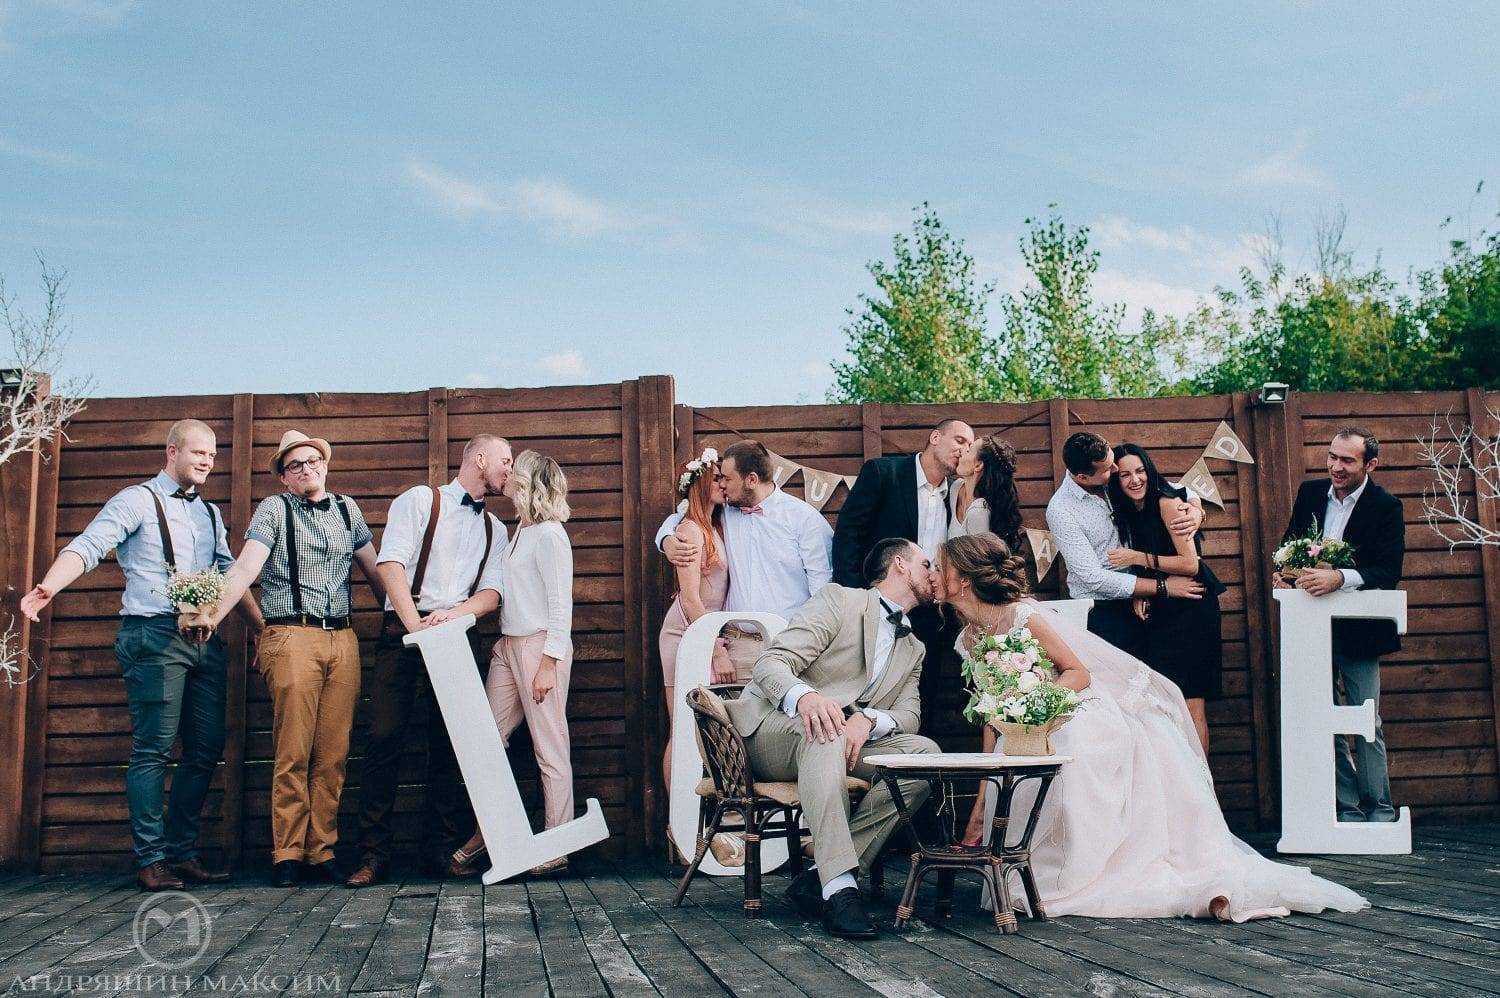 Лучшие места для свадебных фотосессий в москве и подмосковье